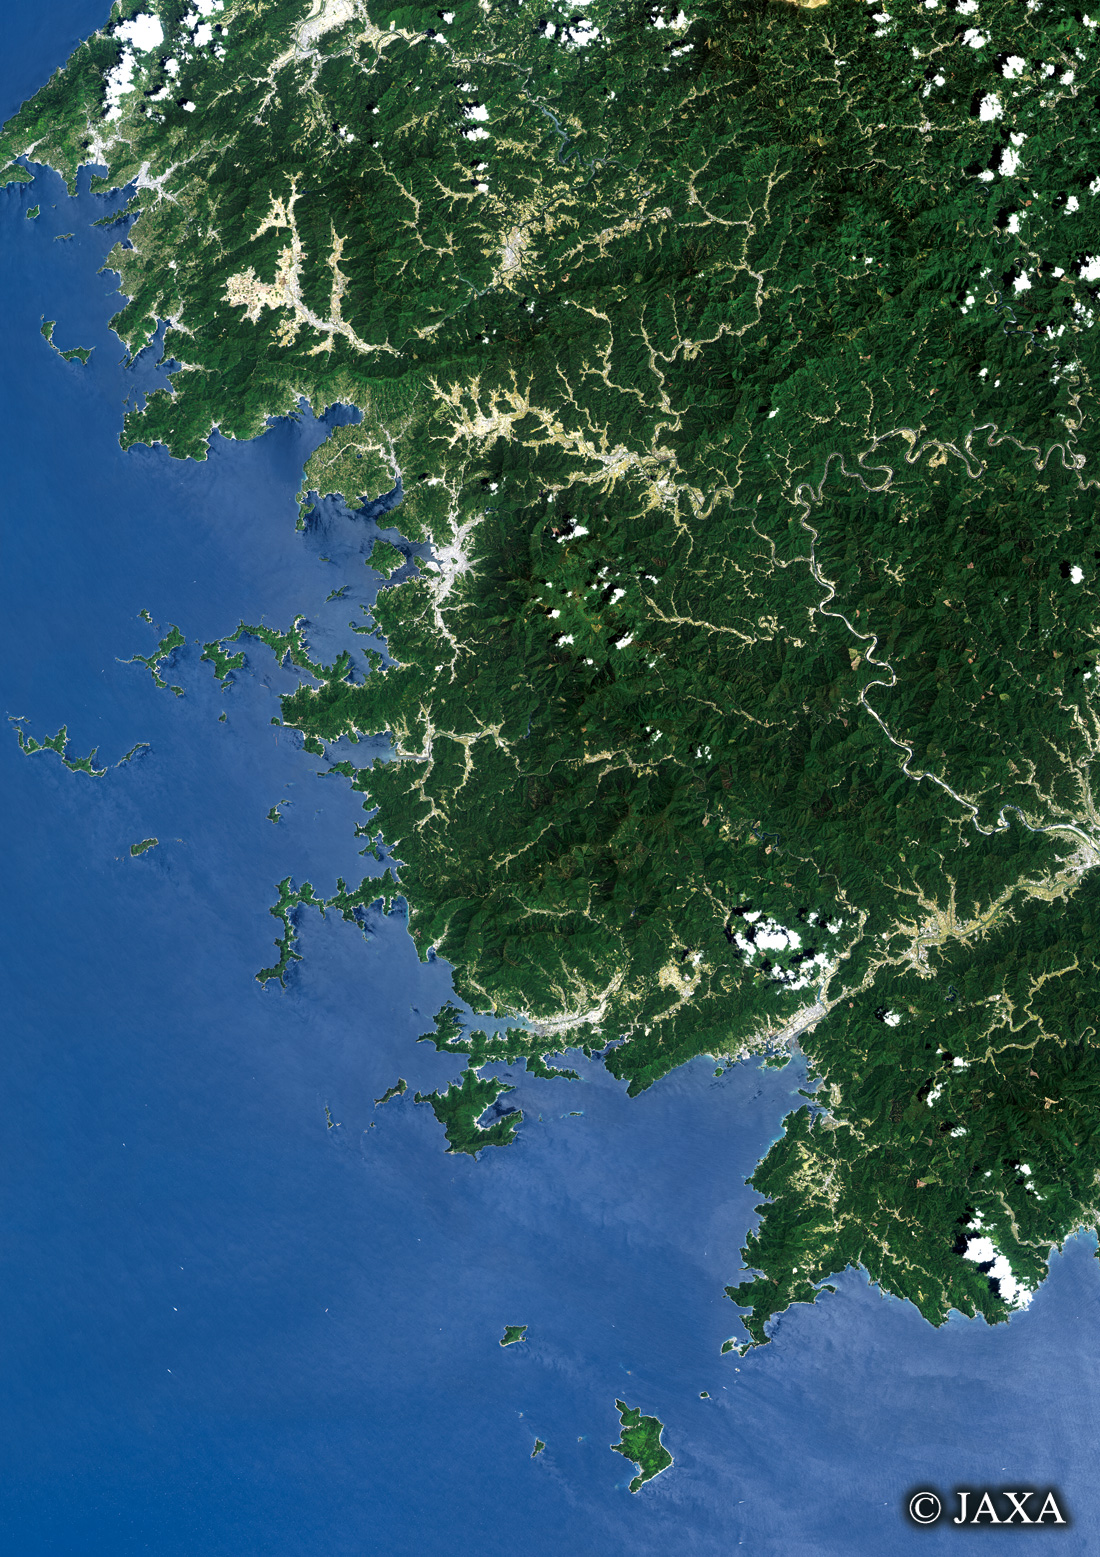 だいちから見た日本の都市 宇和海周辺:衛星画像